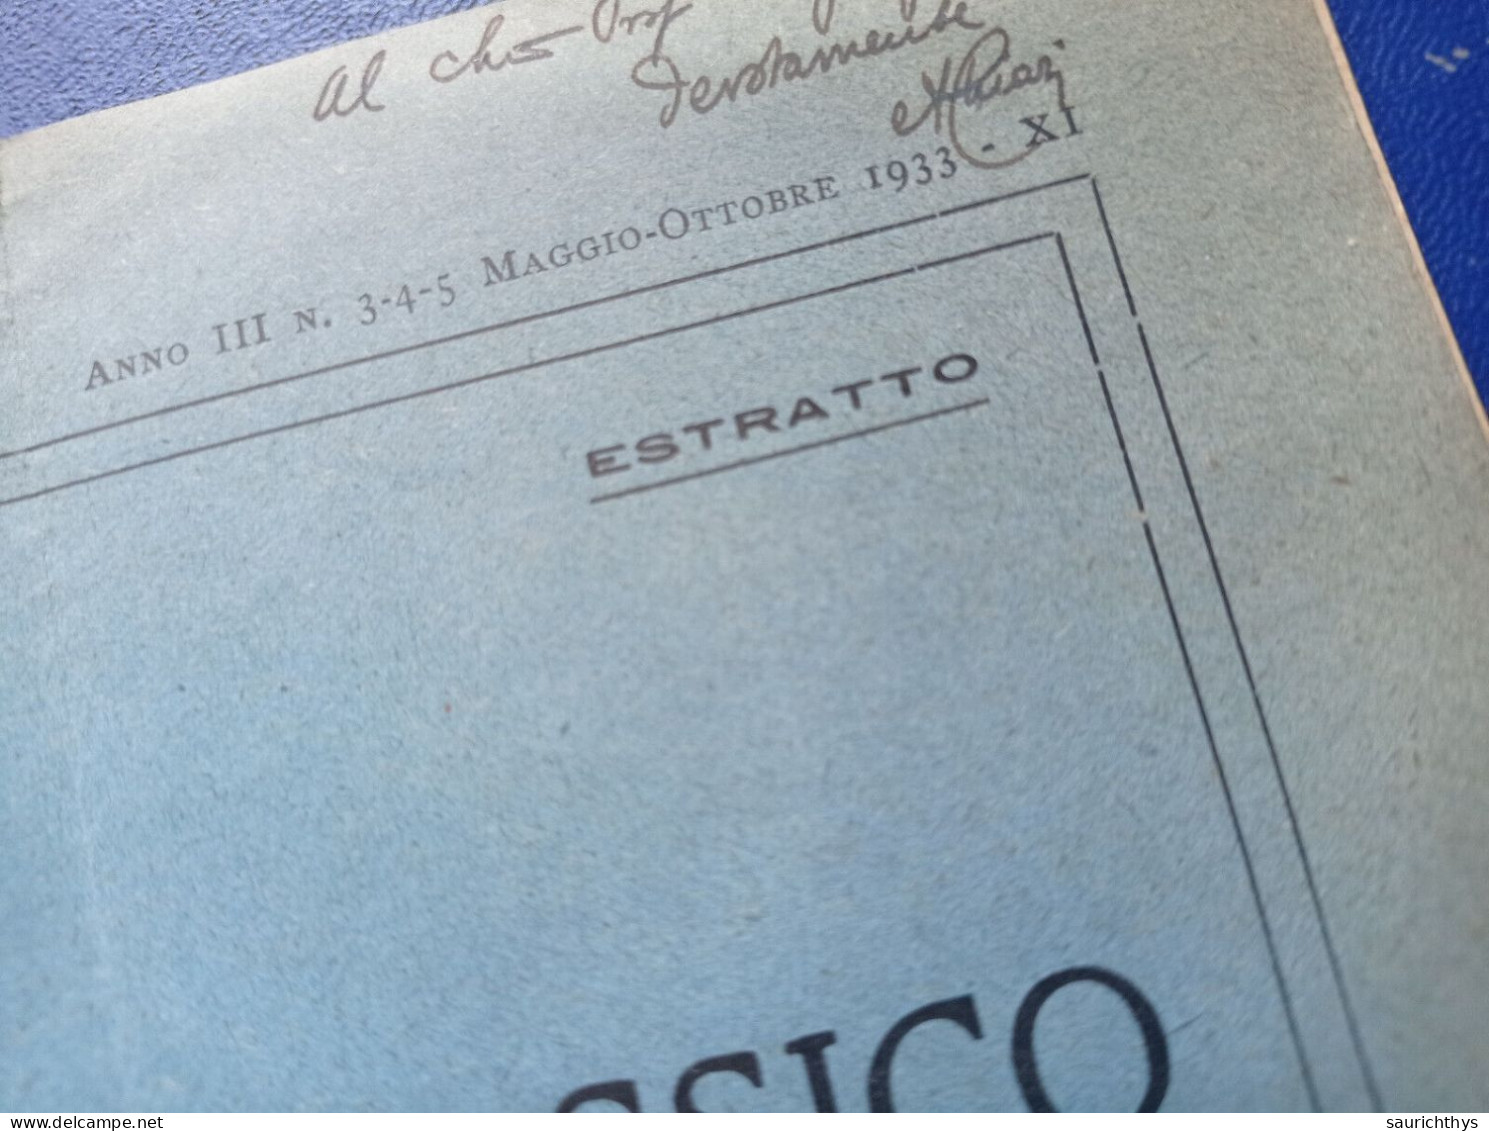 Estratto Rivista Il Mondo Classico Diretta Da Angelo Taccone Con Autografo Filologo Alberto Chiari Da Firenze 1933 - Geschiedenis, Biografie, Filosofie